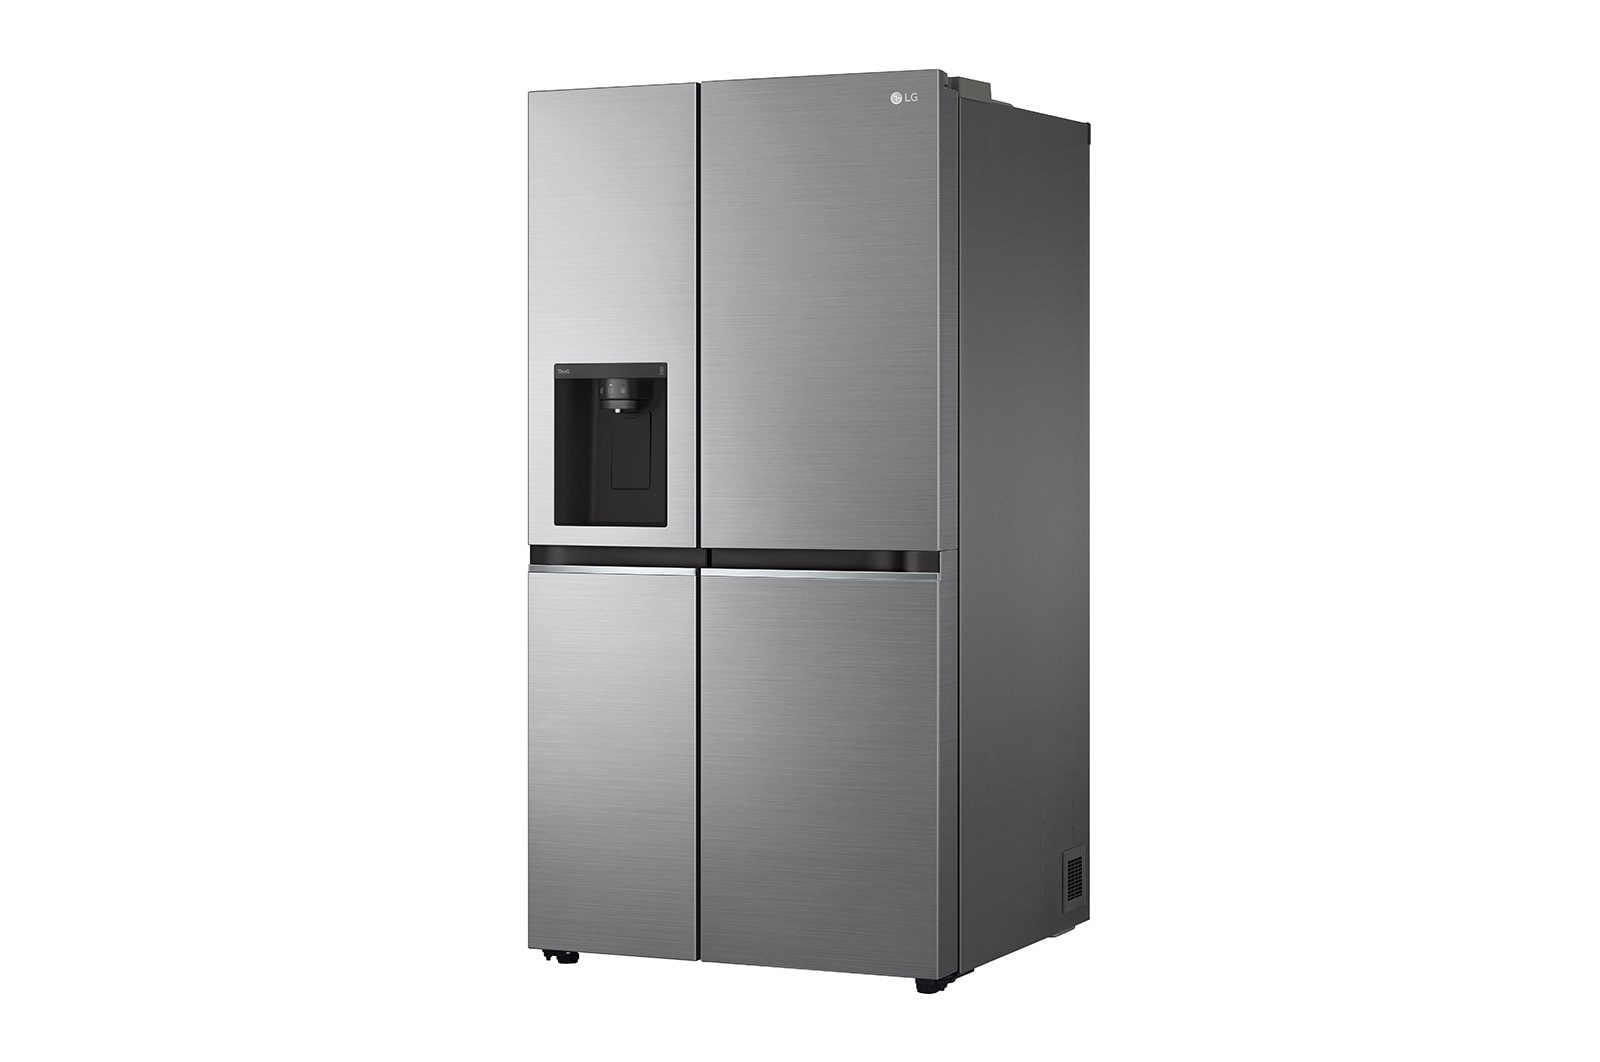 Desprecio franja Estresante Refrigerador Duplex 27 pies - Despachador de Agua y Hielos